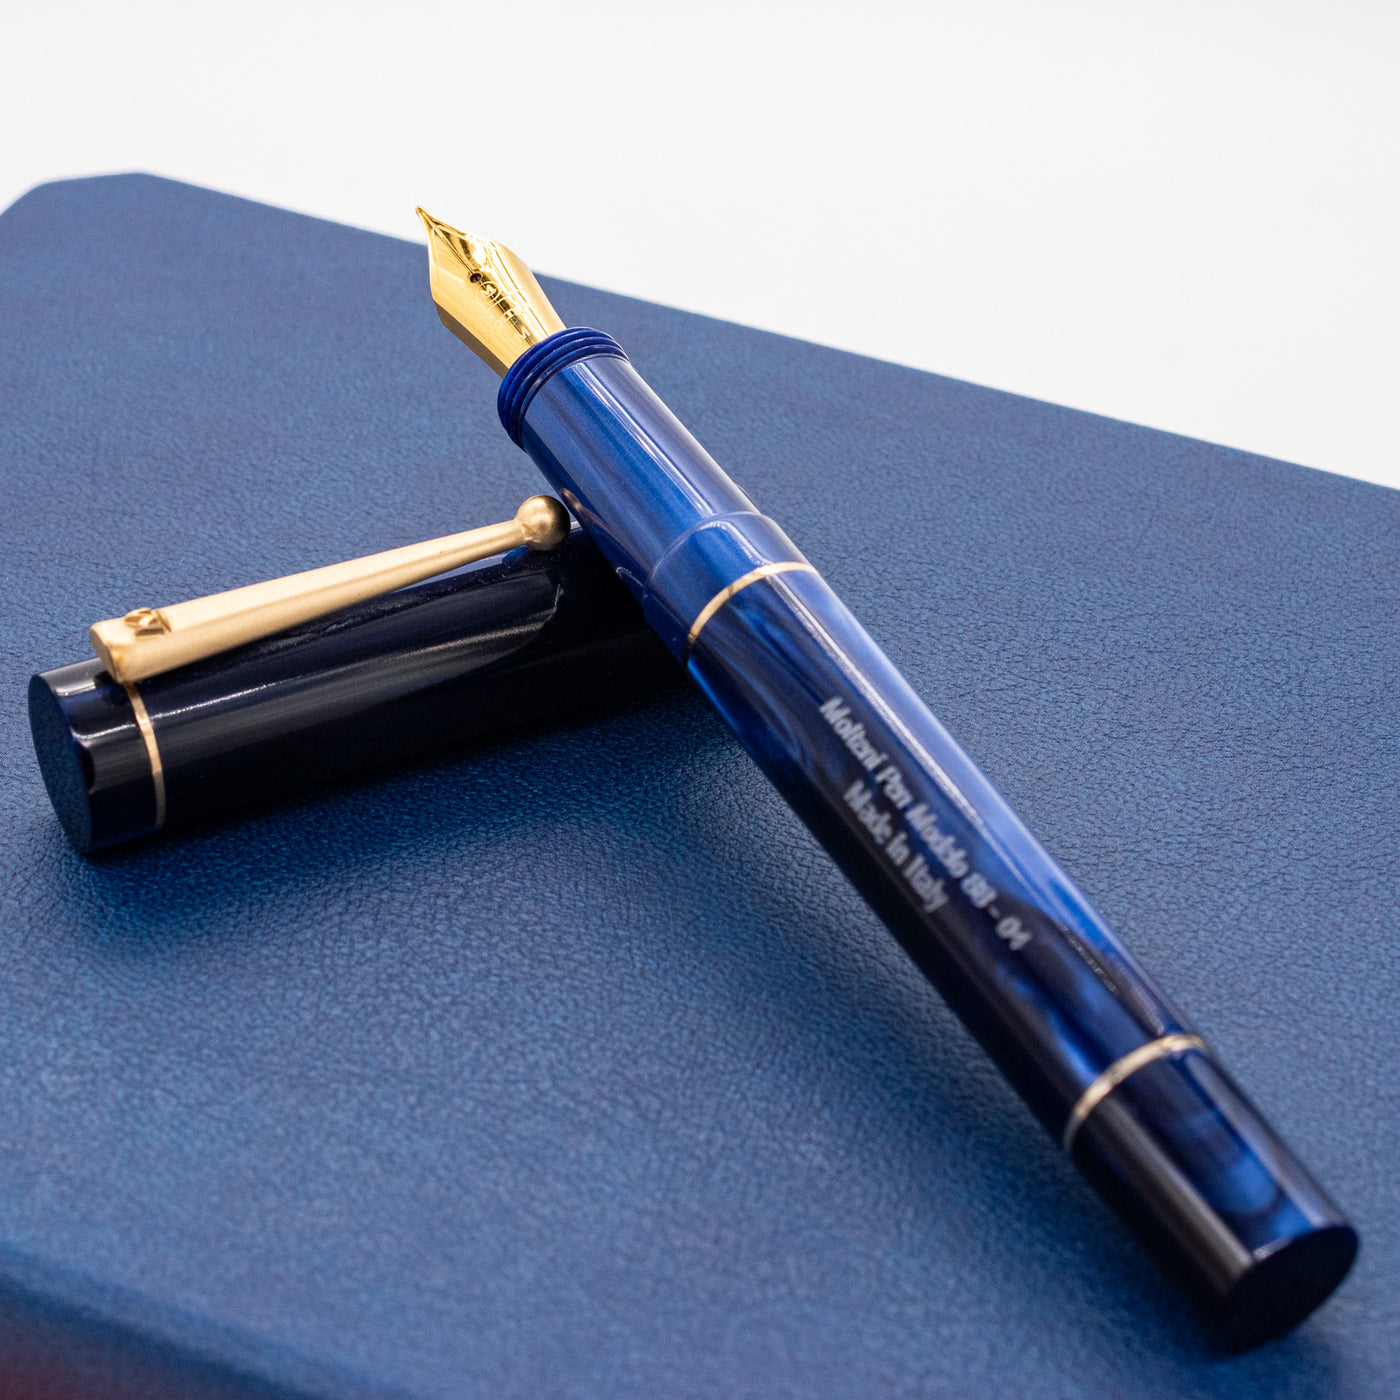 Molteni Modelo 88 Fountain Pen - Midnight Blue dark